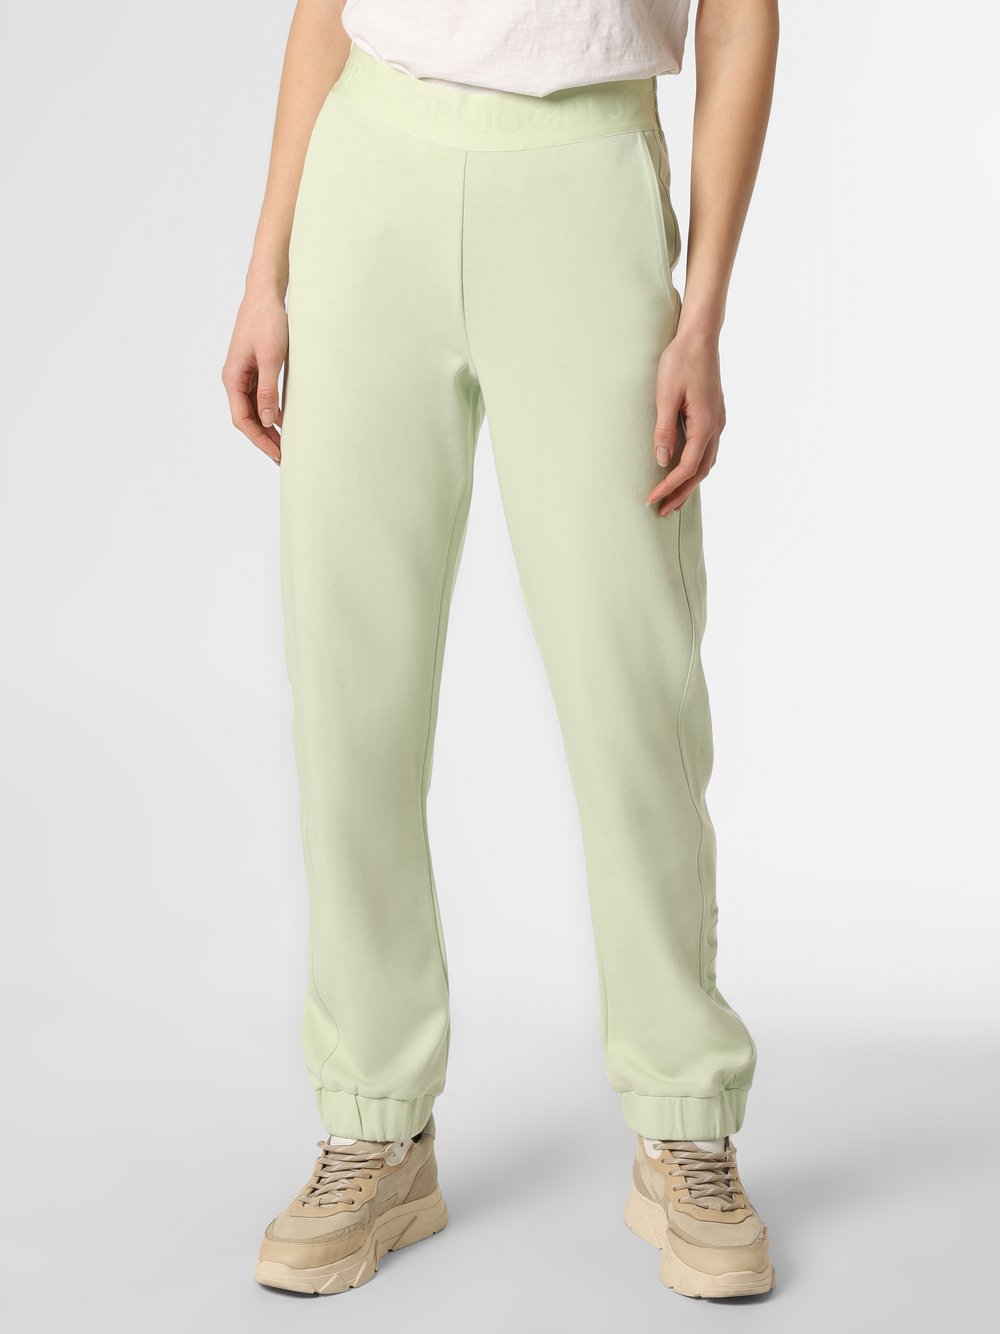 Joop - Damskie spodnie dresowe, zielony